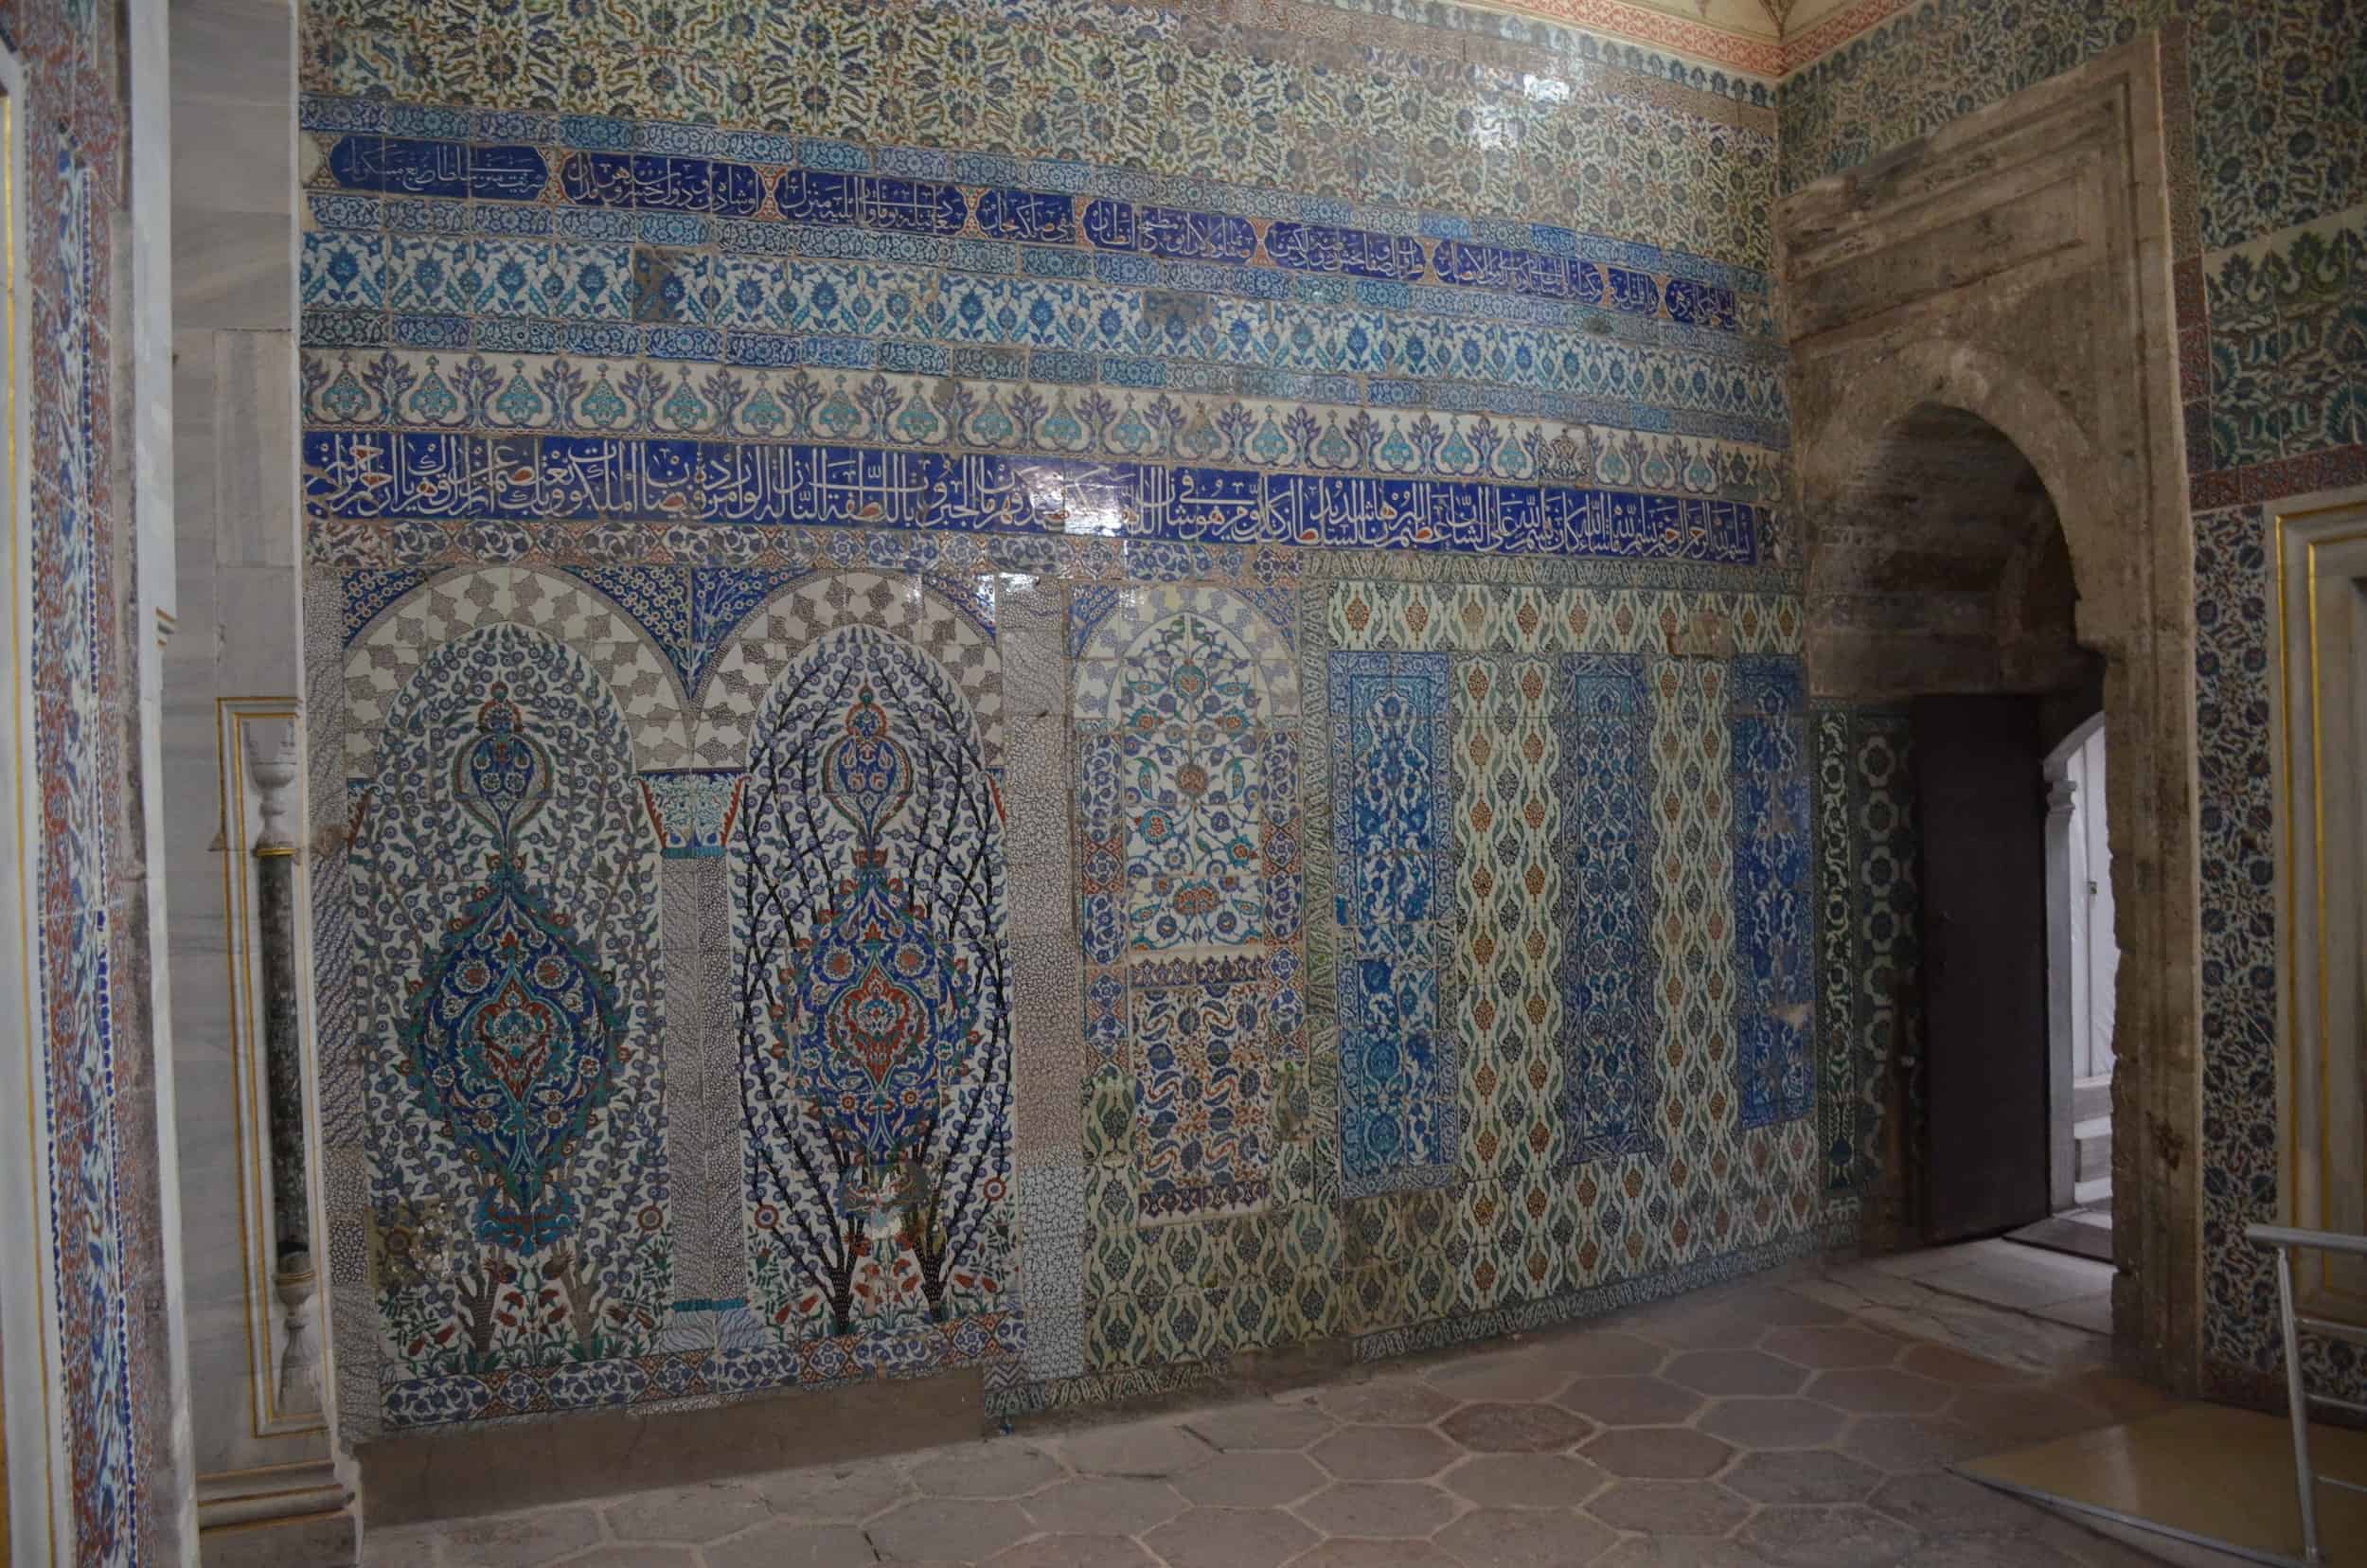 Vestibule in the Imperial Harem at Topkapi Palace in Istanbul, Turkey